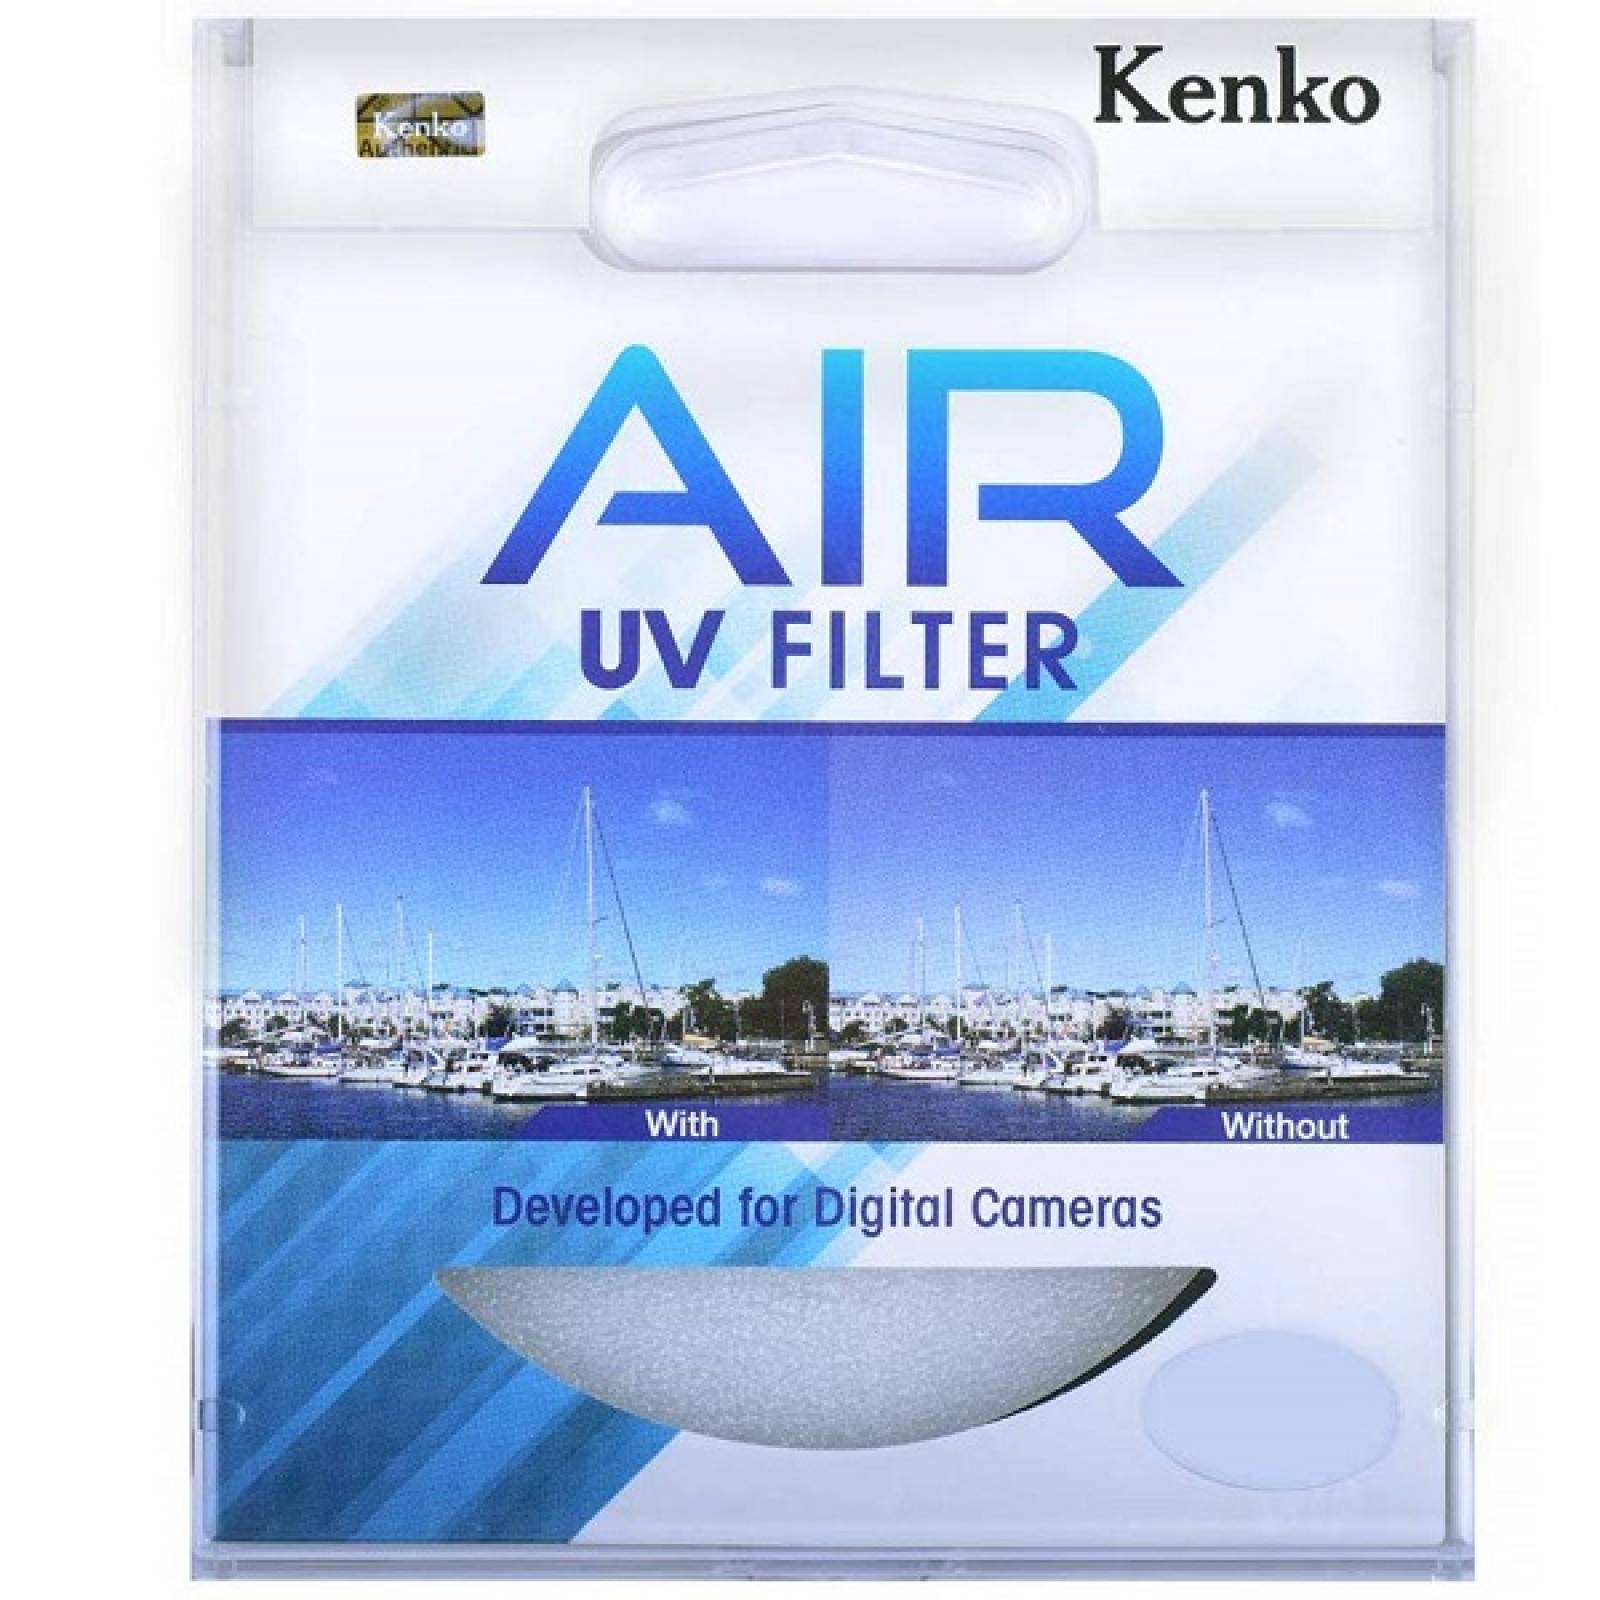  Filtro UV Air Kenko Diametro 67mm modelo 226793